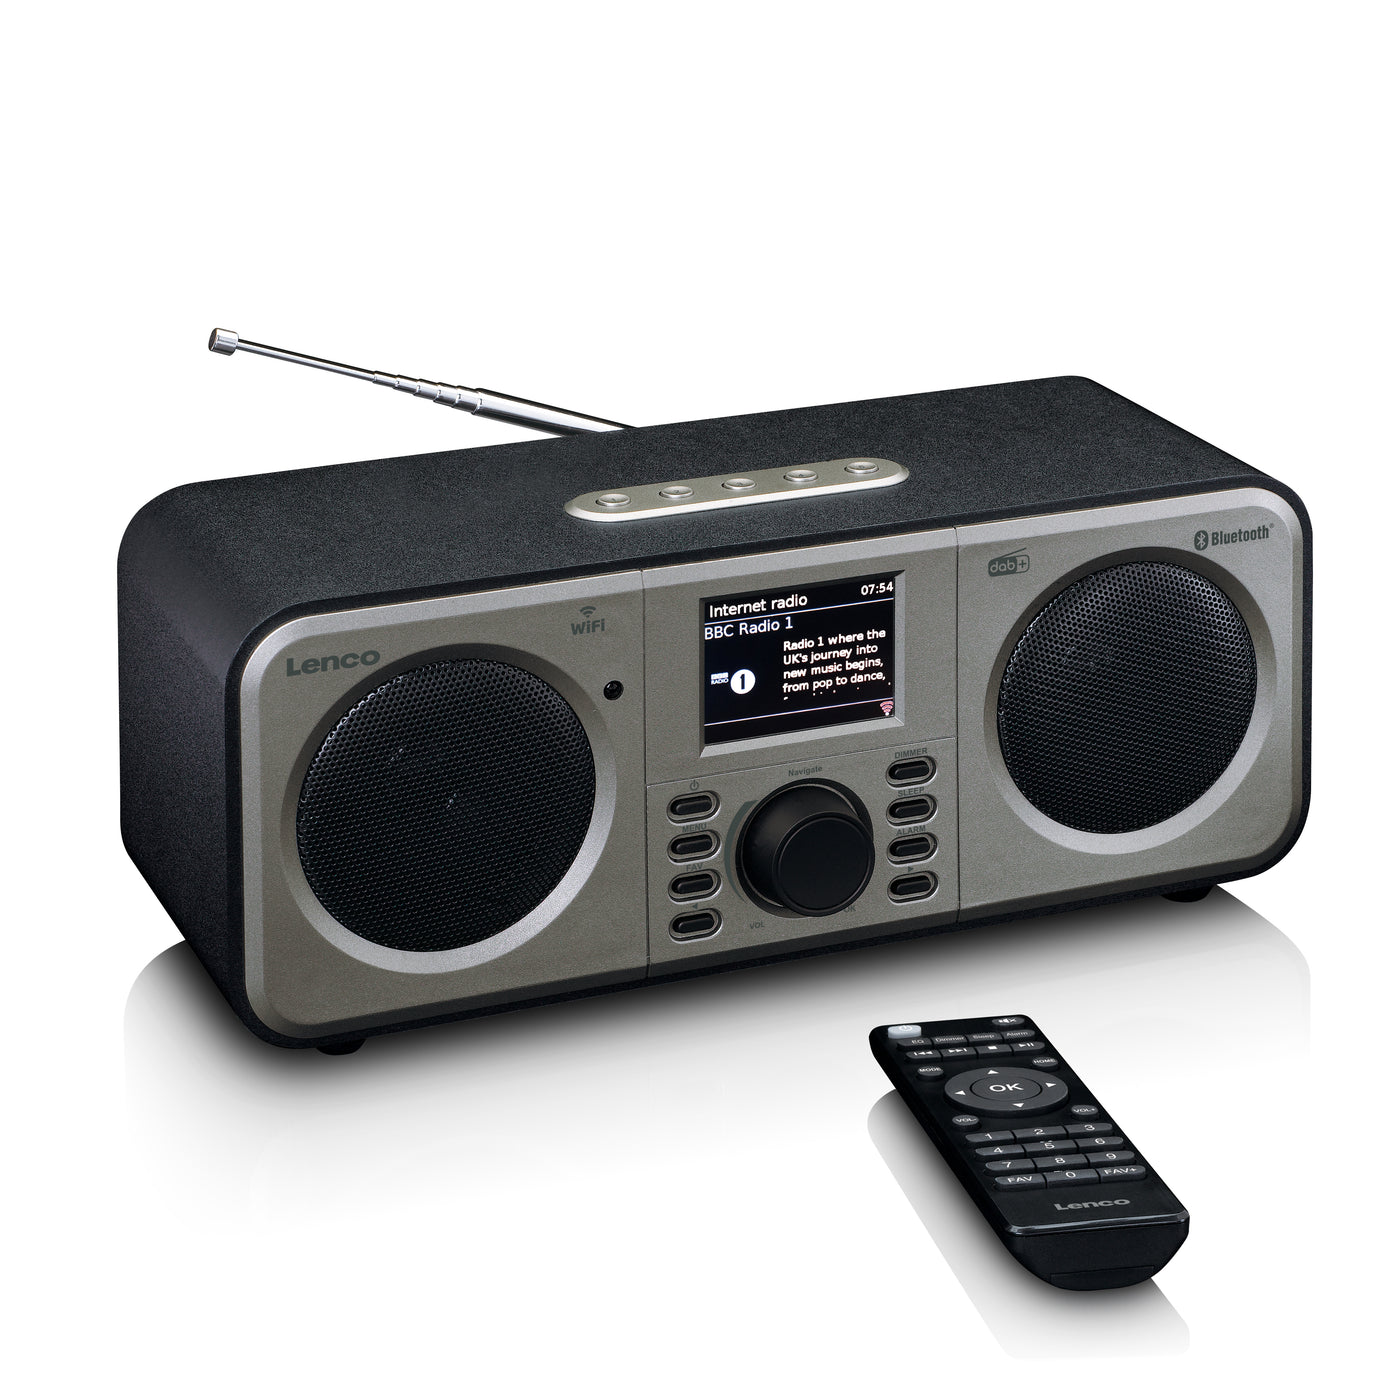 LENCO DIR-141BK - Internet radio with DAB+, Bluetooth® and Spotify